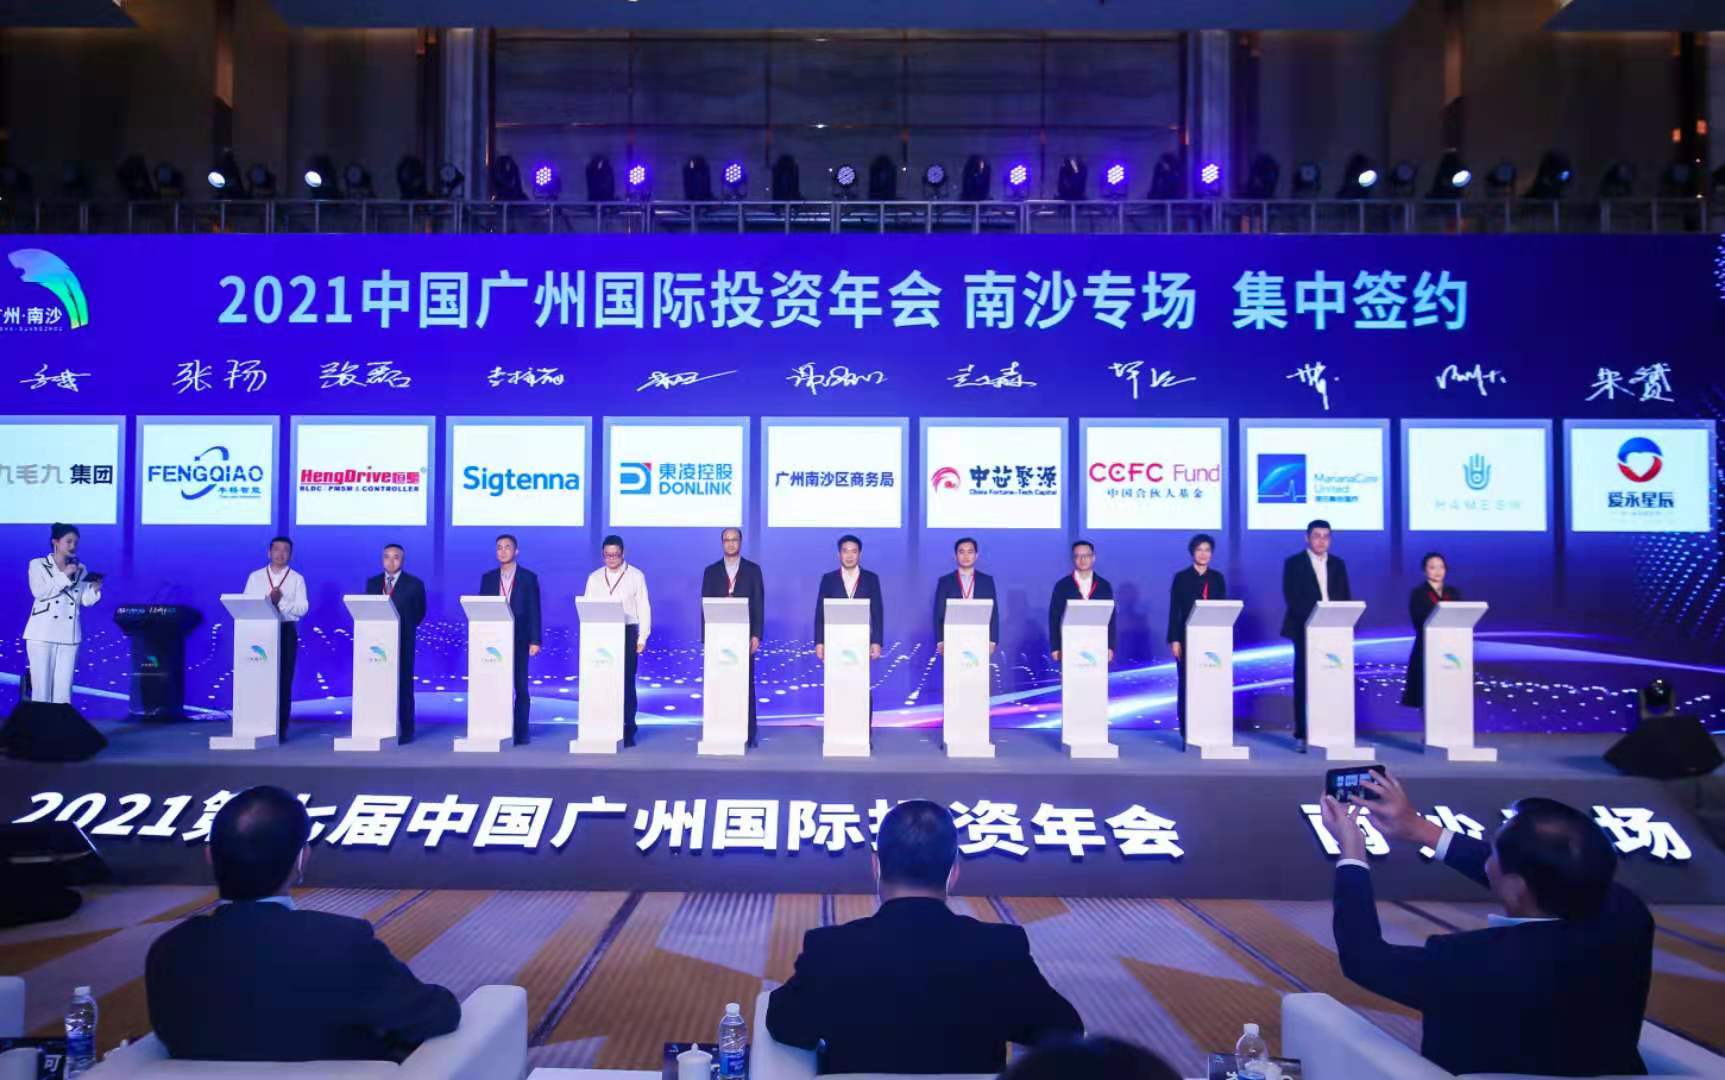 广州丰桥智能装备有限公司荣获“未来之星”称号